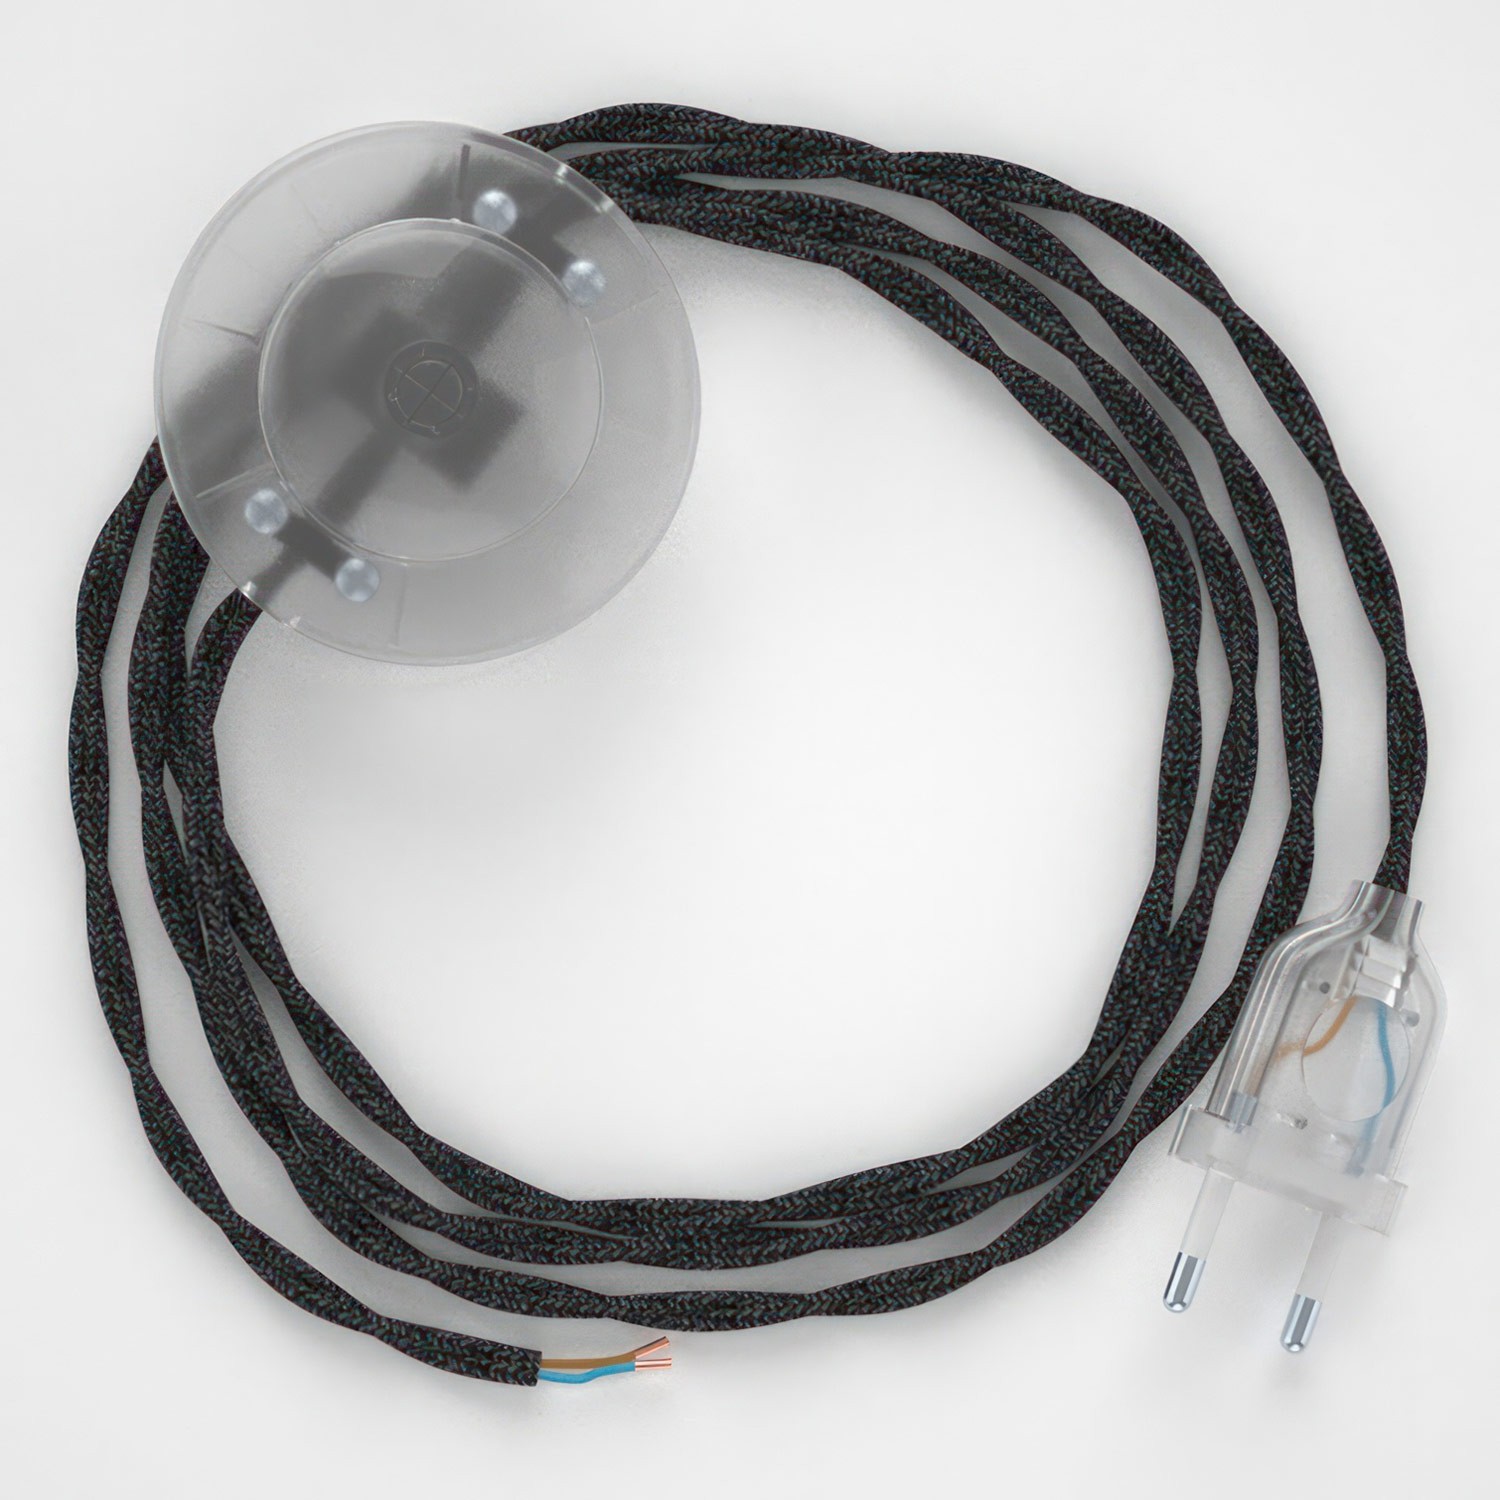 Cableado para lámpara de pie, cable TN03 Lino Natural Antracita 3 m. Elige tu el color de la clavija y del interruptor!